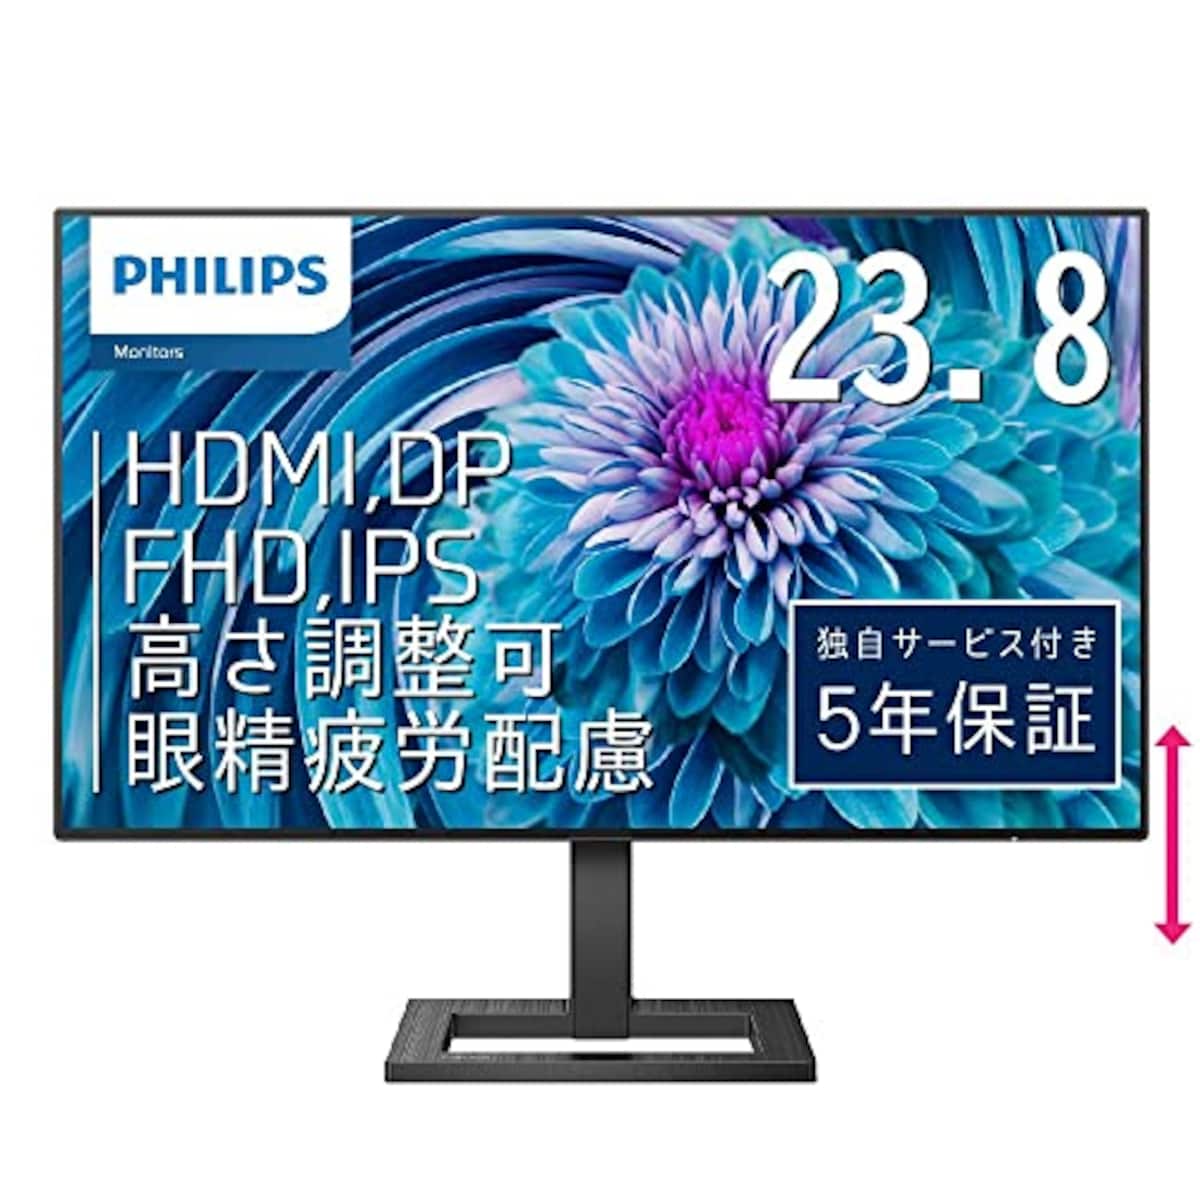 PHILIPS モニターディスプレイ 242E2FE/11 (23.8インチ/IPS Technology/FHD/5年保証/HDMI/D-Sub/DVI-D/フレームレス/昇降・高さ調節)画像